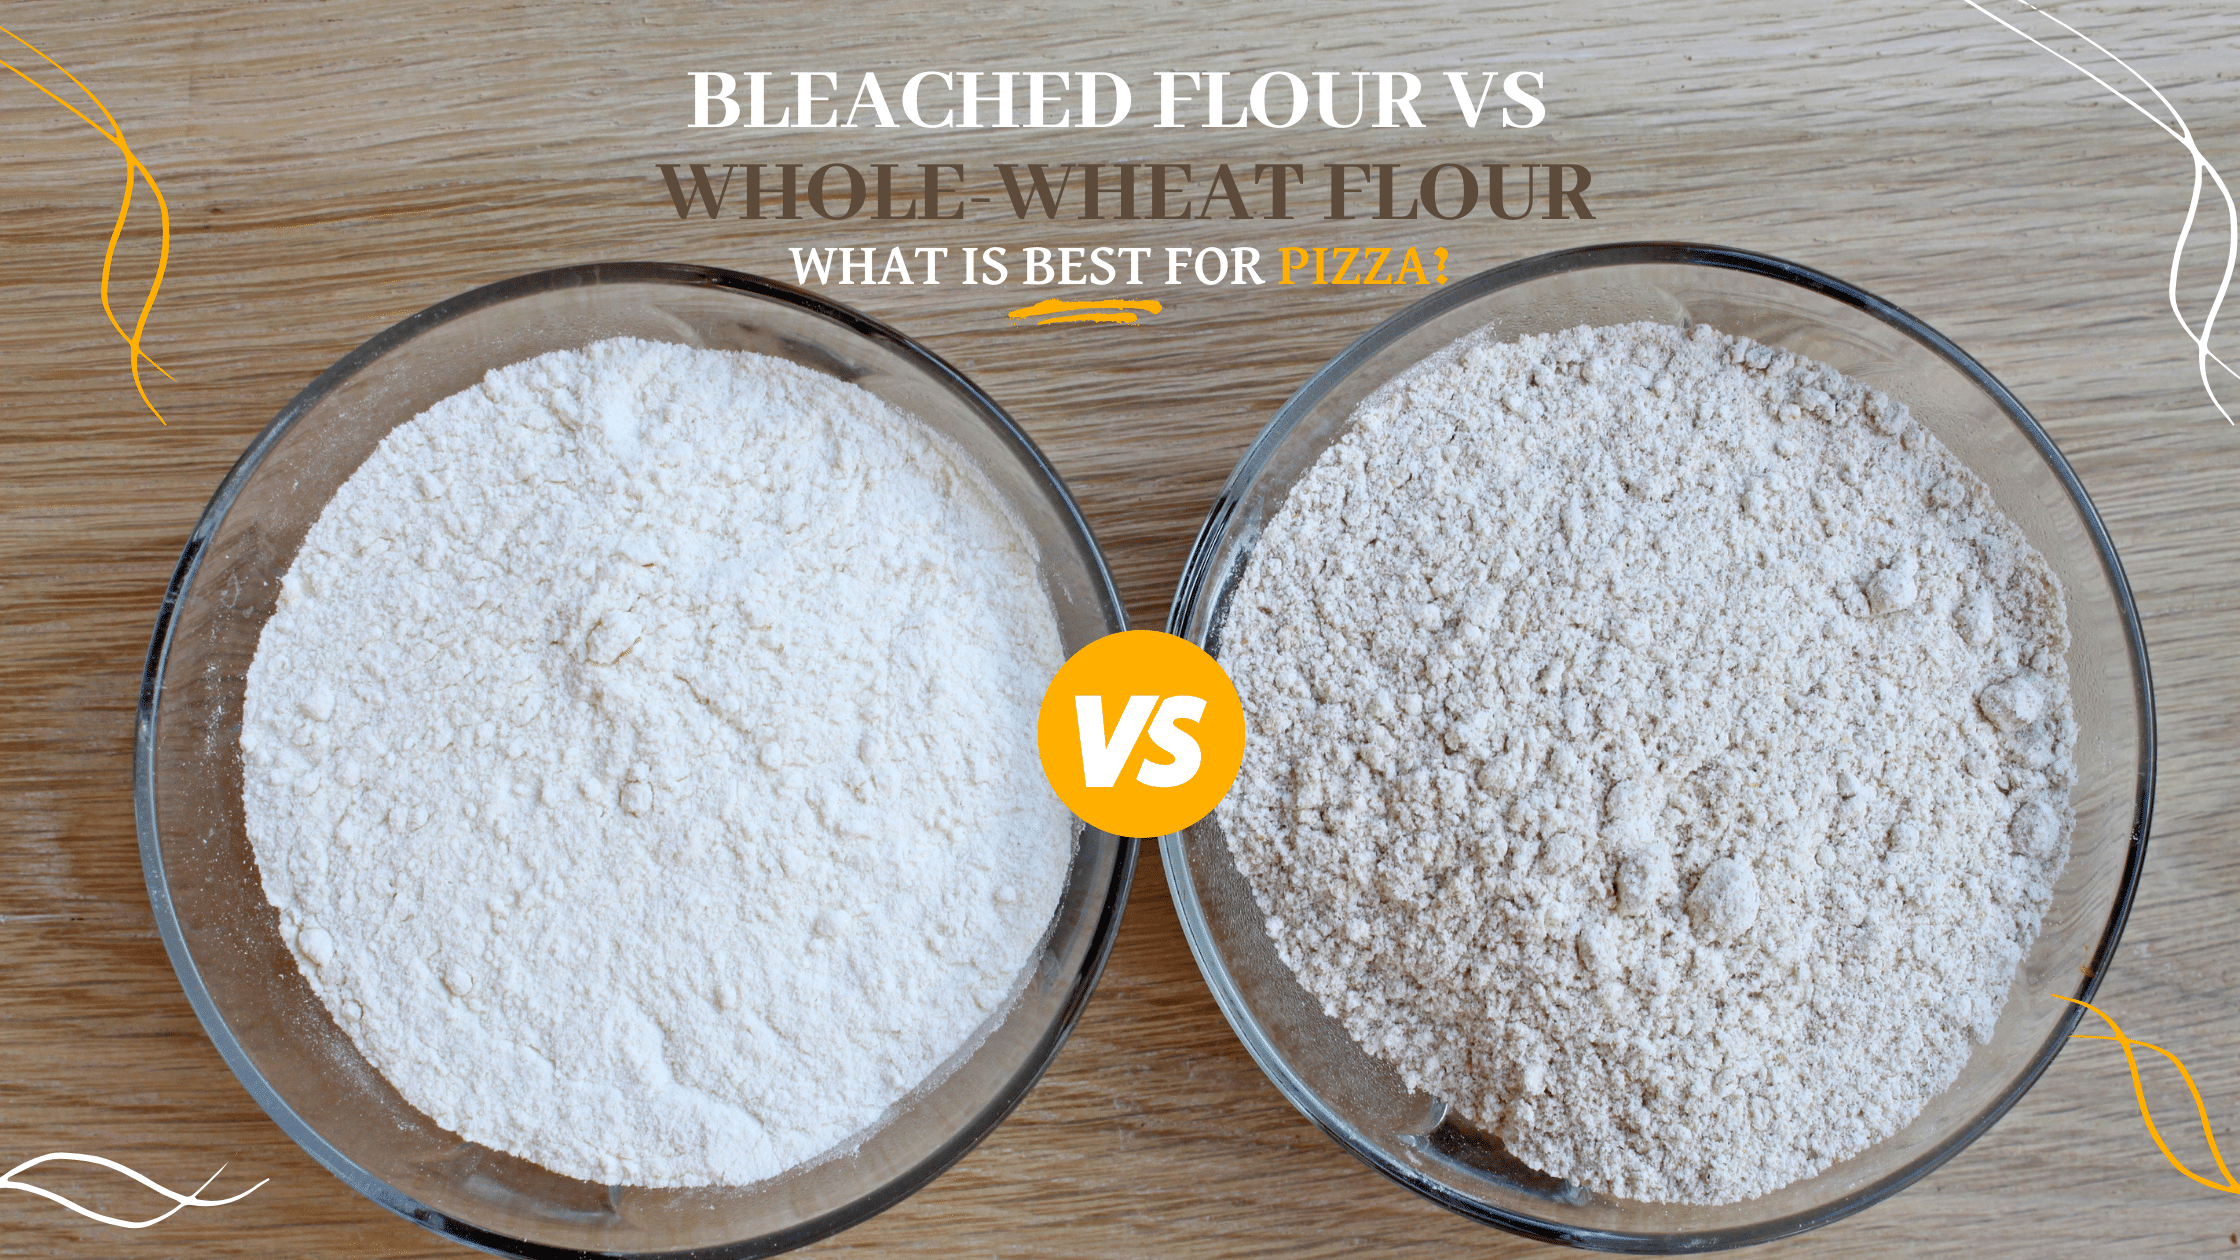 Bleached flour vs whole-wheat flour